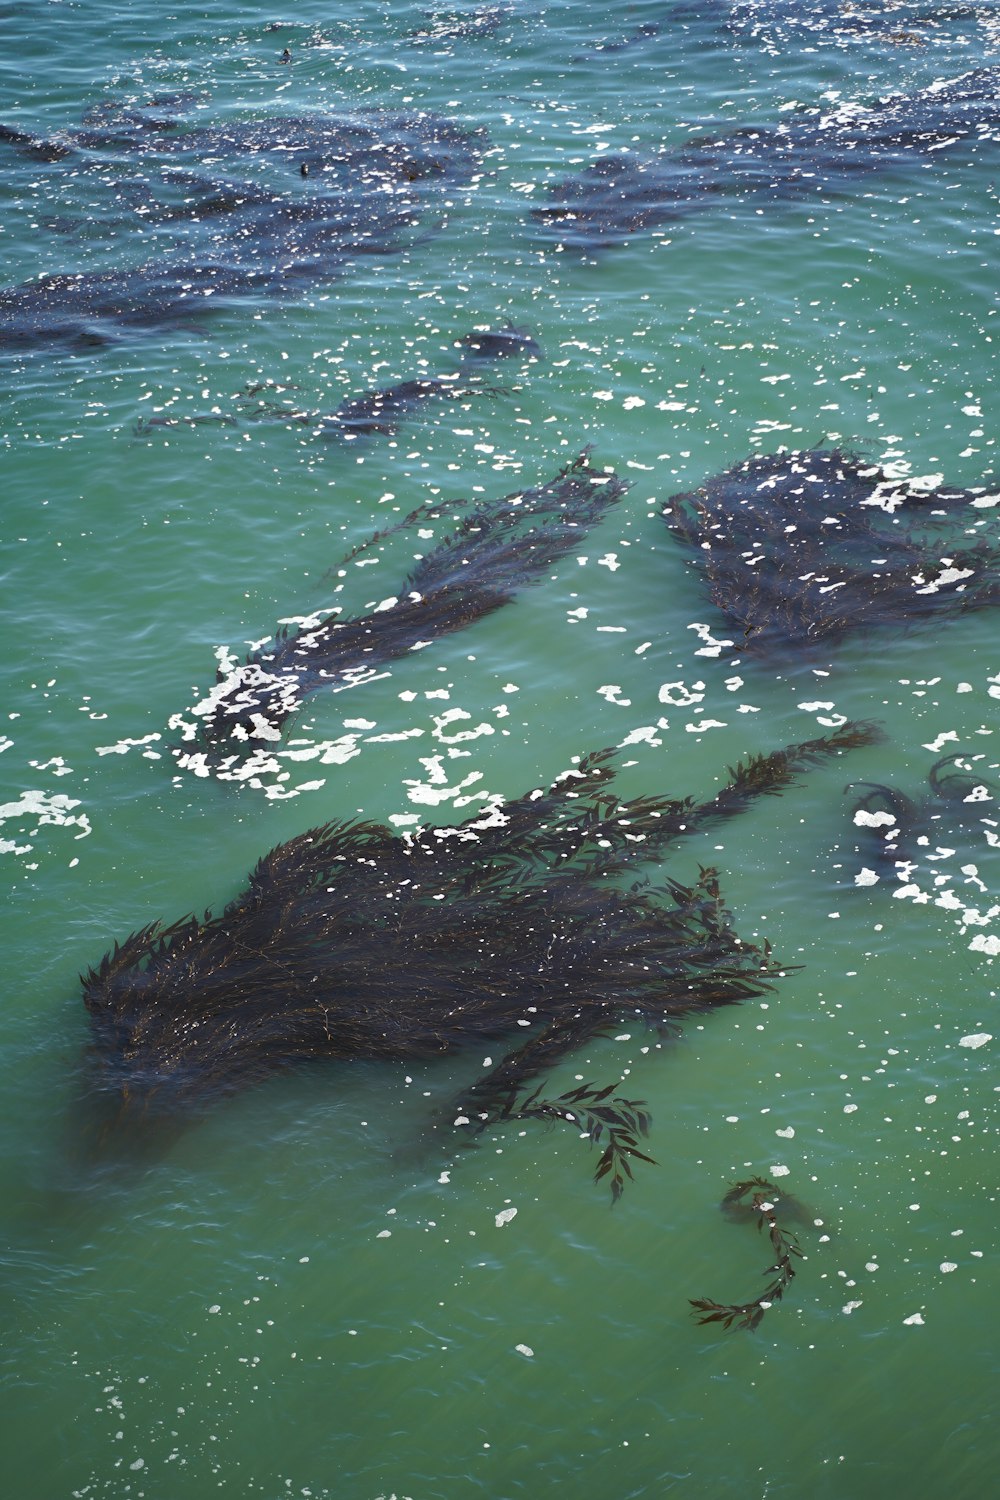 Un grupo de peces nadando en el océano